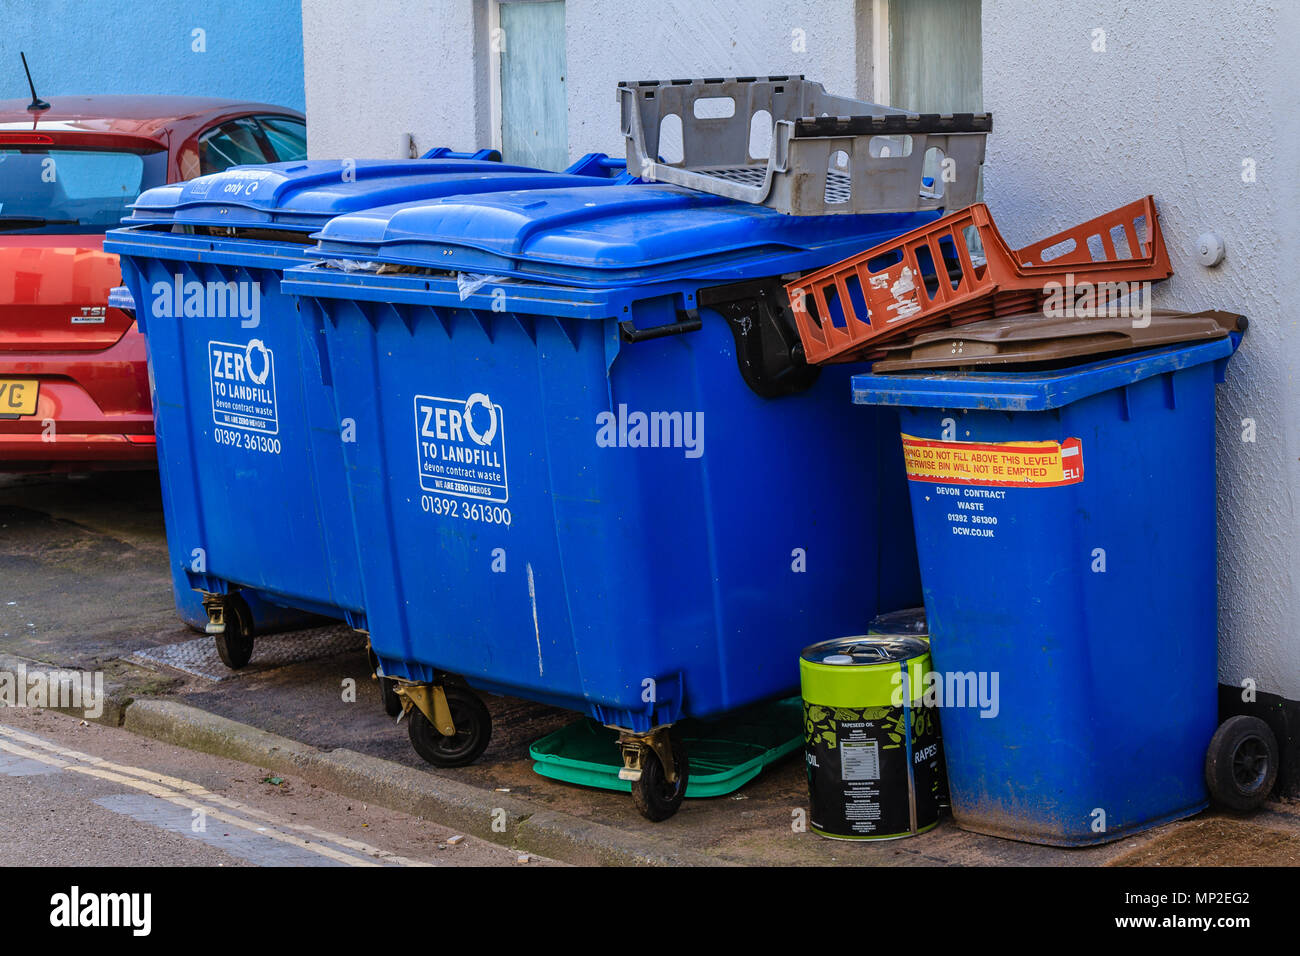 Reihe der großen blauen kommerzielle Verwertung der Behälter in einer Nebenstraße hinter einem gewerblichen Räumen. Teignmouth, Devon. Feb 2018. Stockfoto